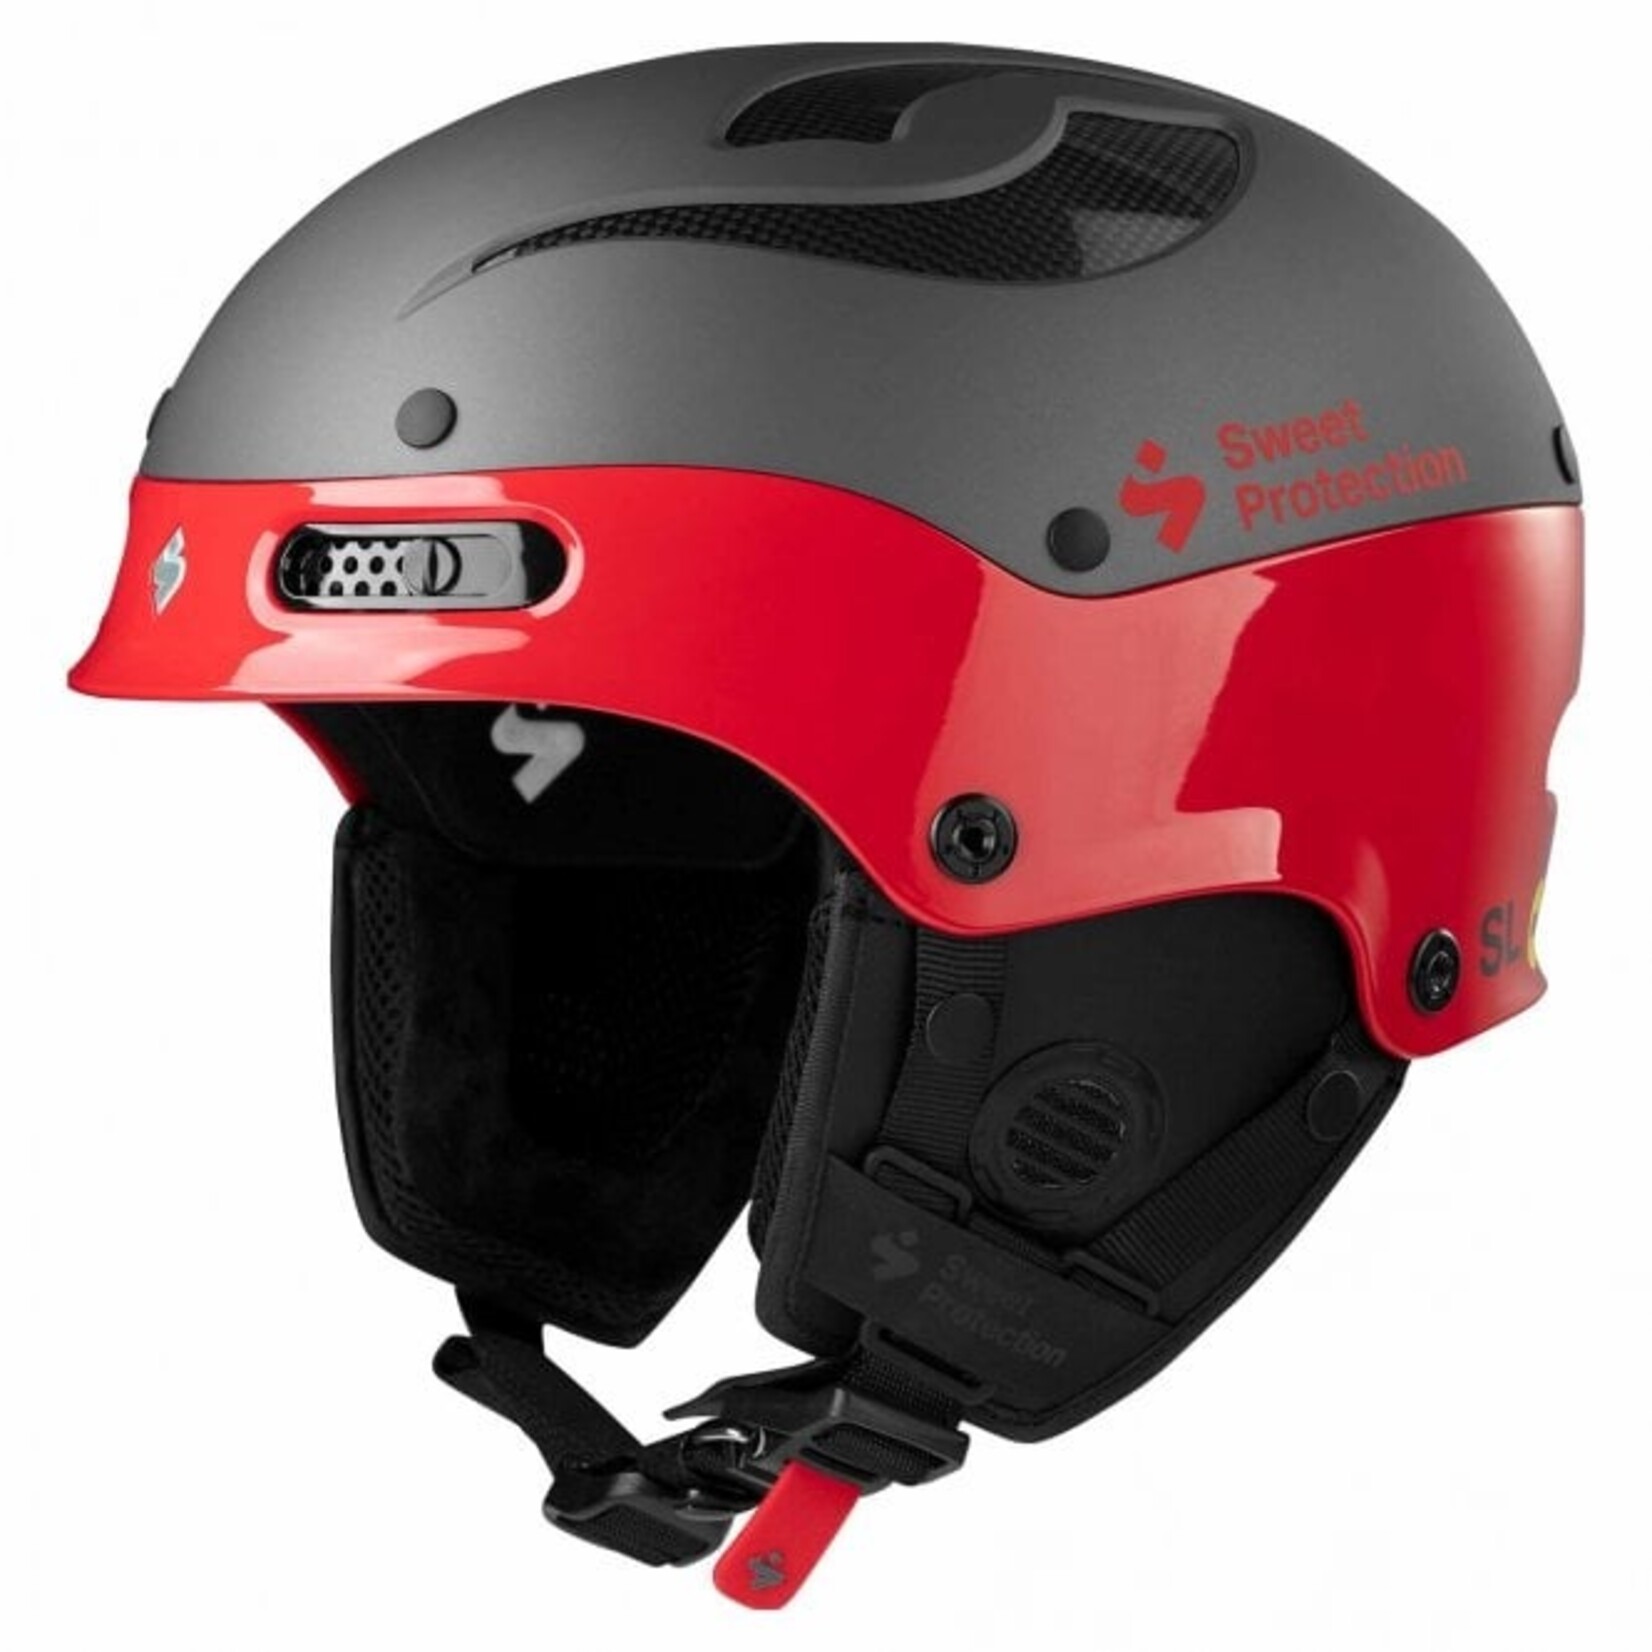 Sweet Protection Trooper II SL MIPS Helmet - Ski Helmet